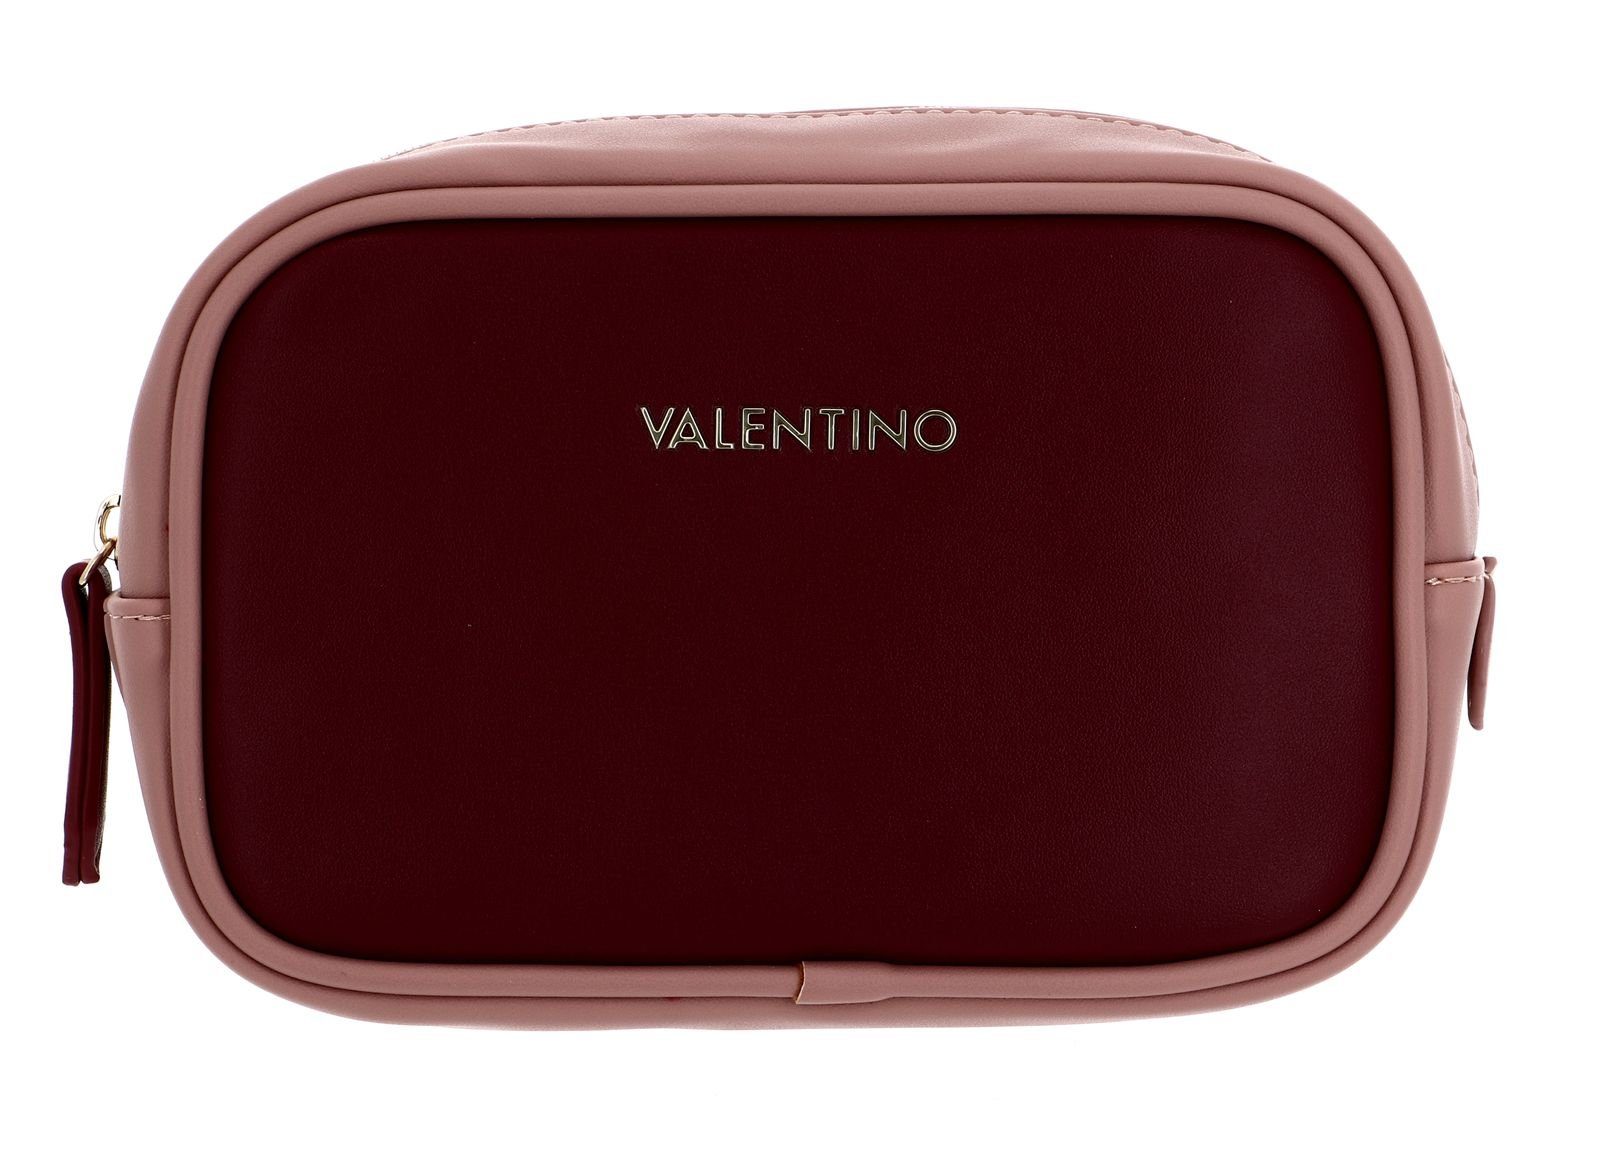 hat einen supergünstigen Ausverkauf! VALENTINO BAGS Kosmetiktasche Rossio Rosso Multicolor 